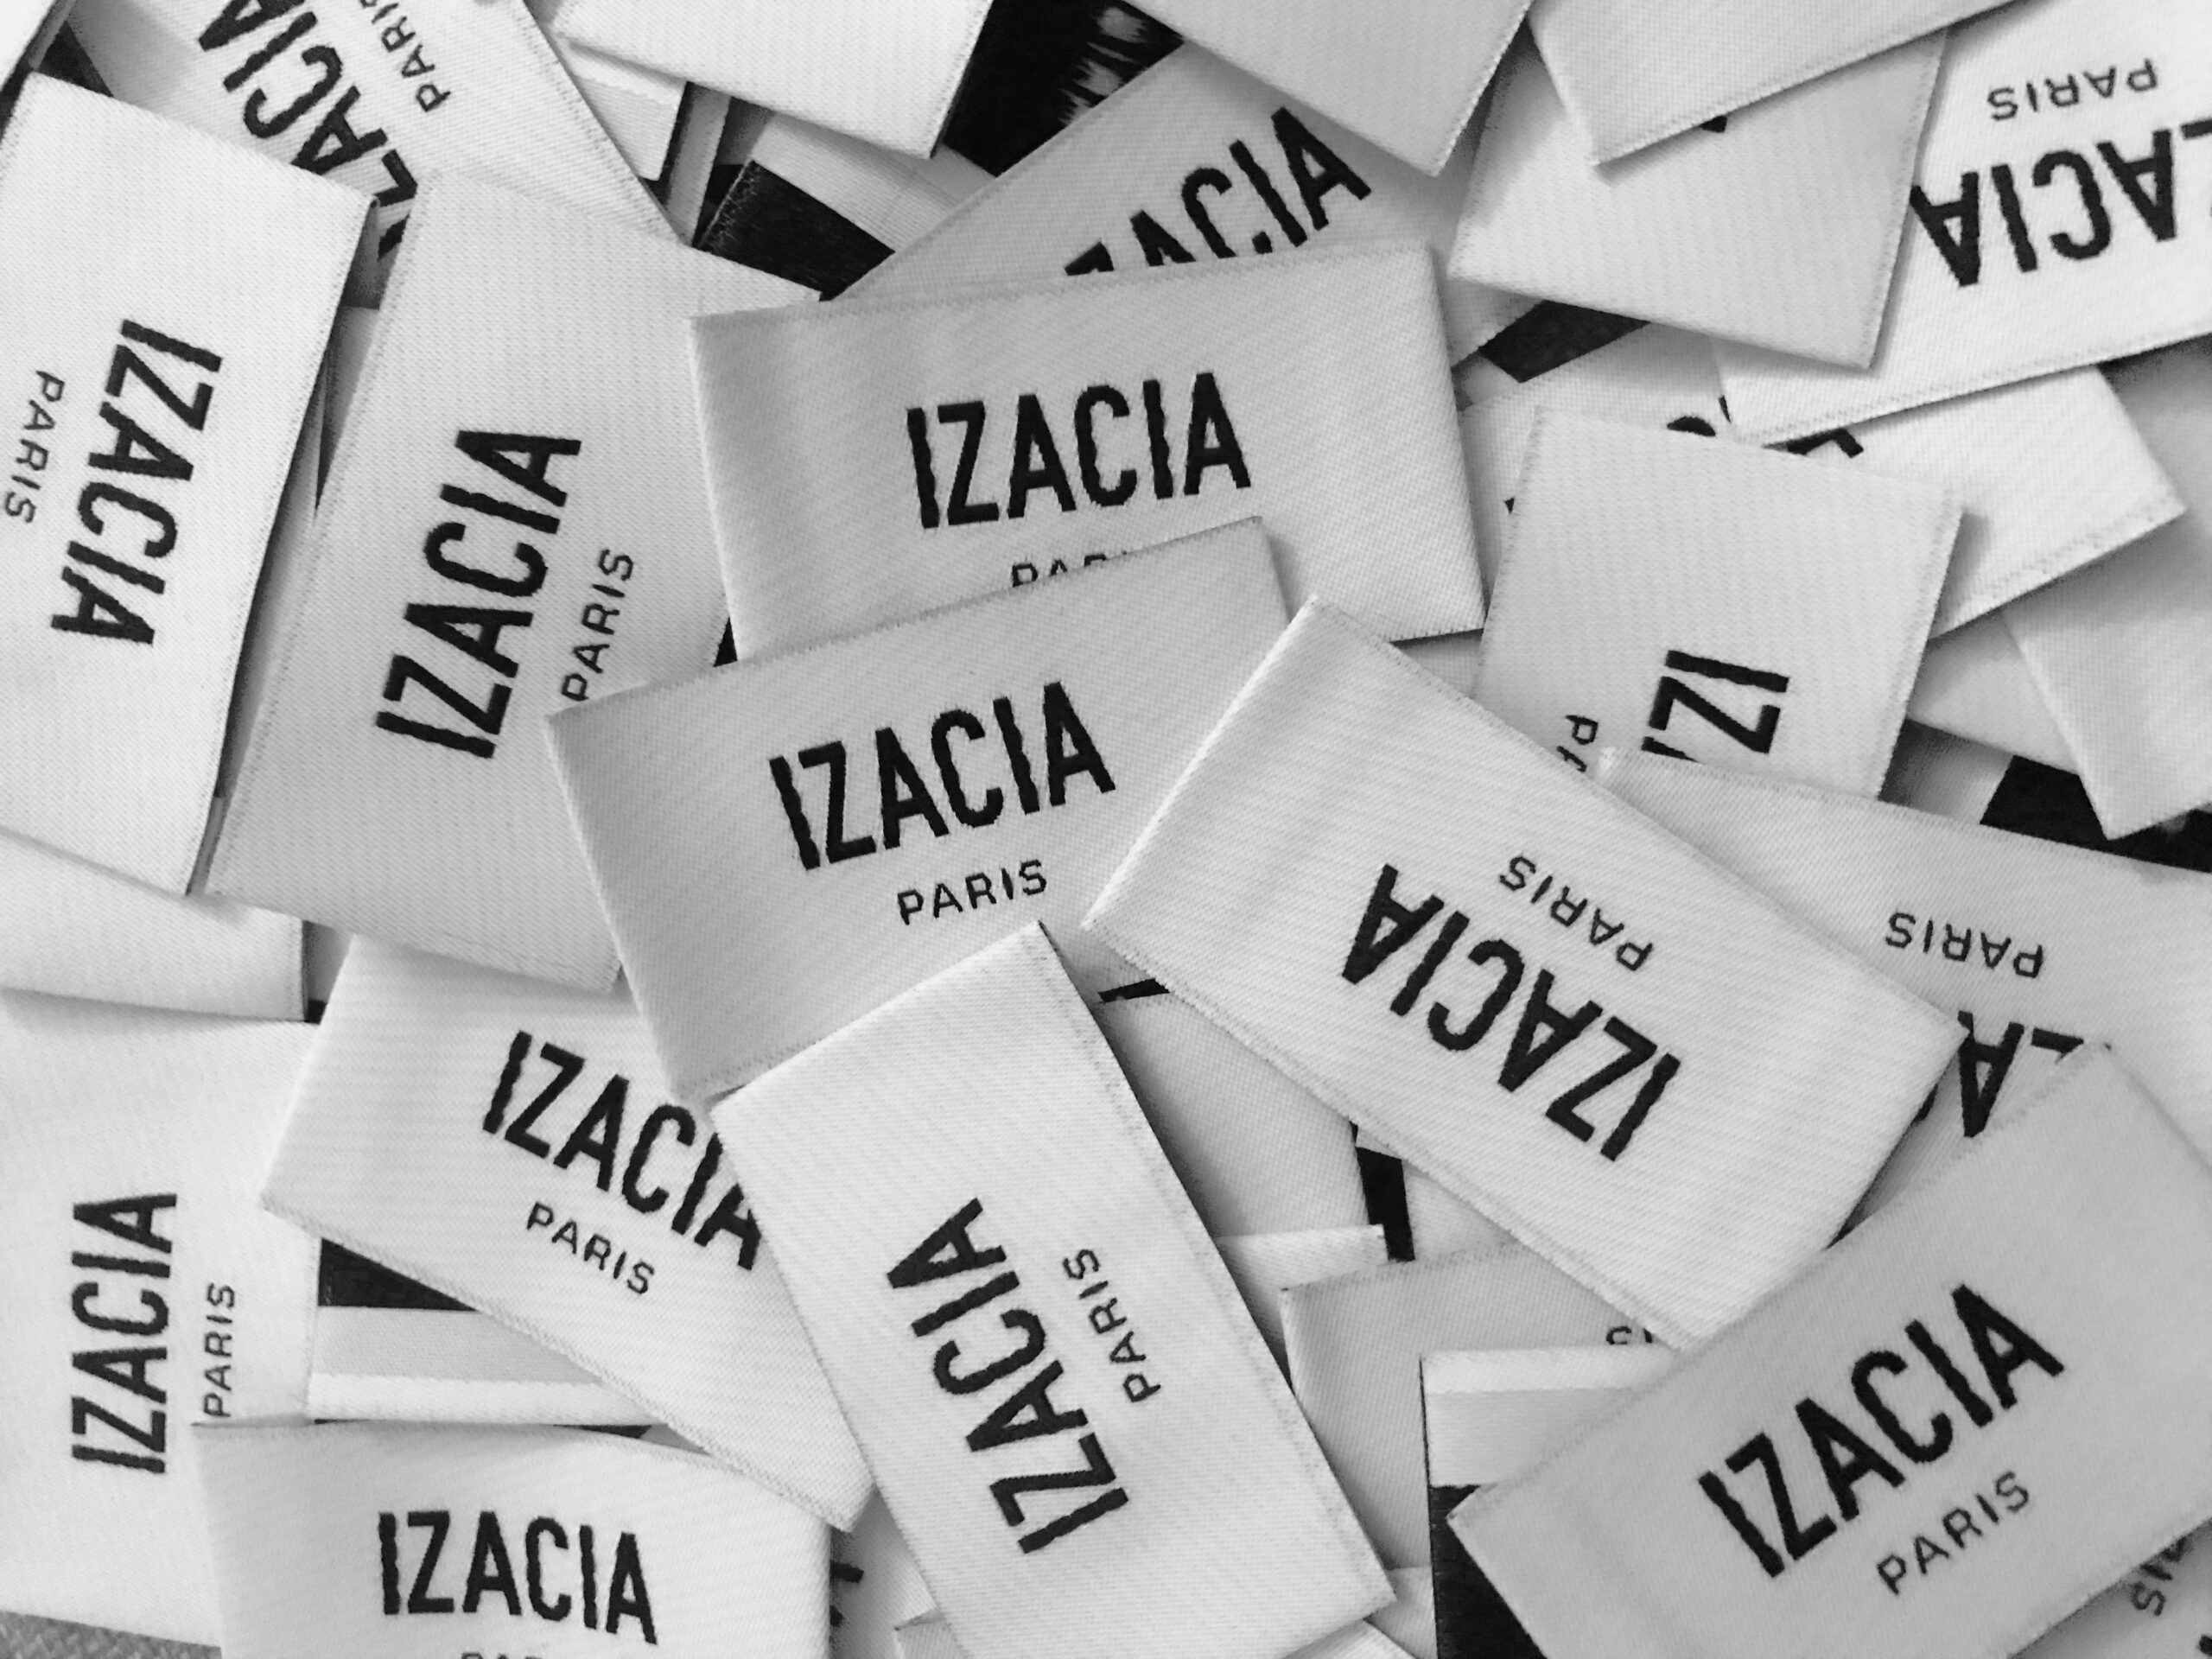 IZACIA Paris est une marque de tailleurs féminin écoresponsable, inclusif et made in France.